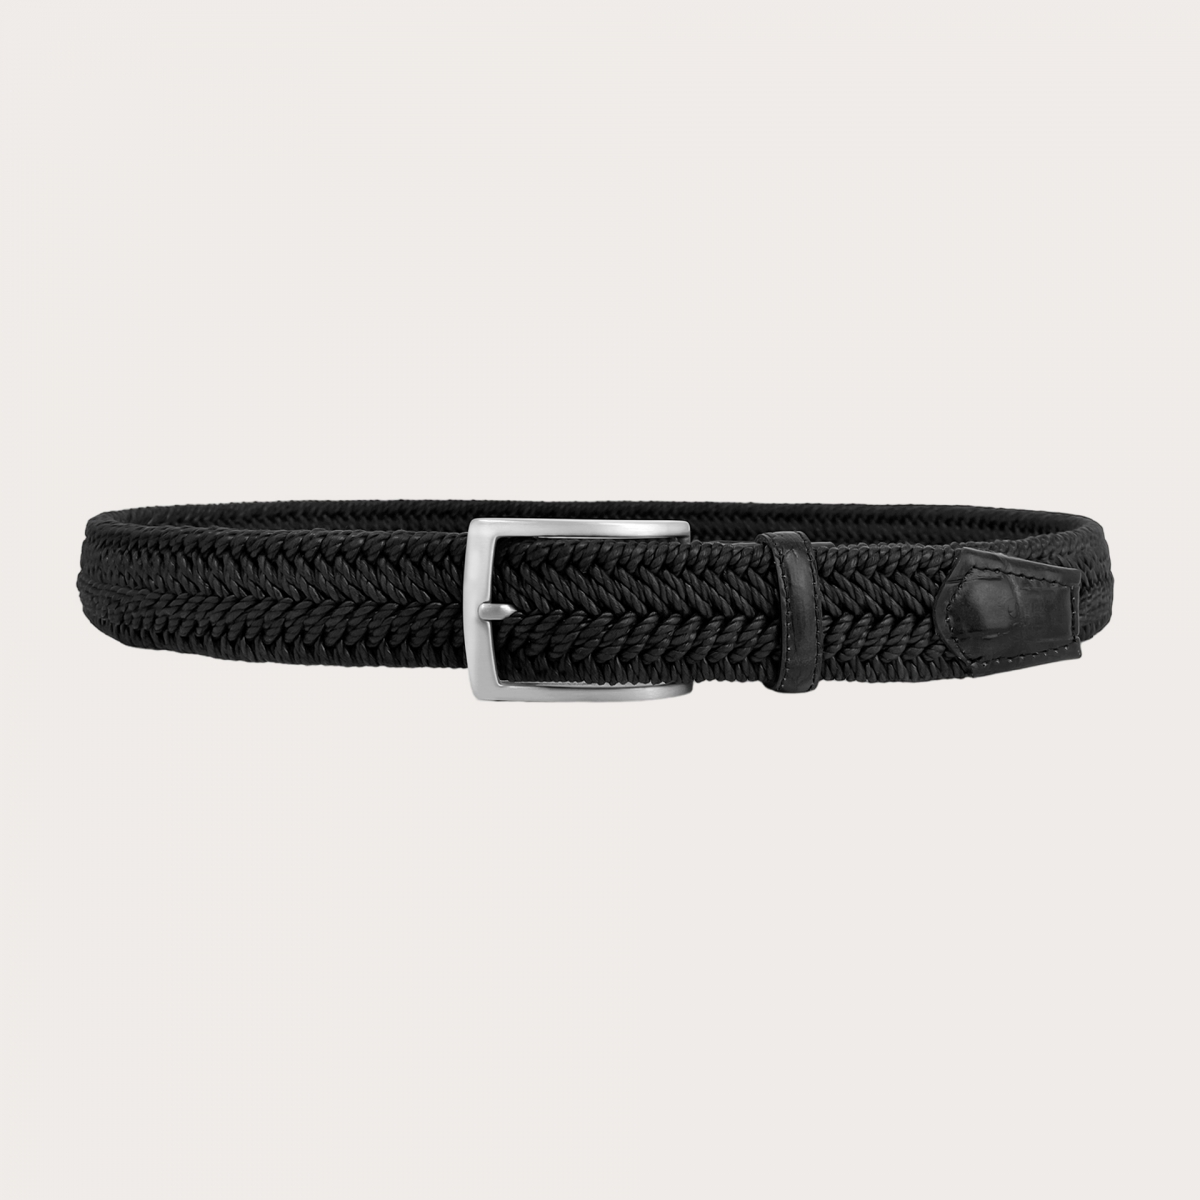 Classique ceinture tressée élastique noire embellie de parties en cuir de bovin véritable estampé crocodile